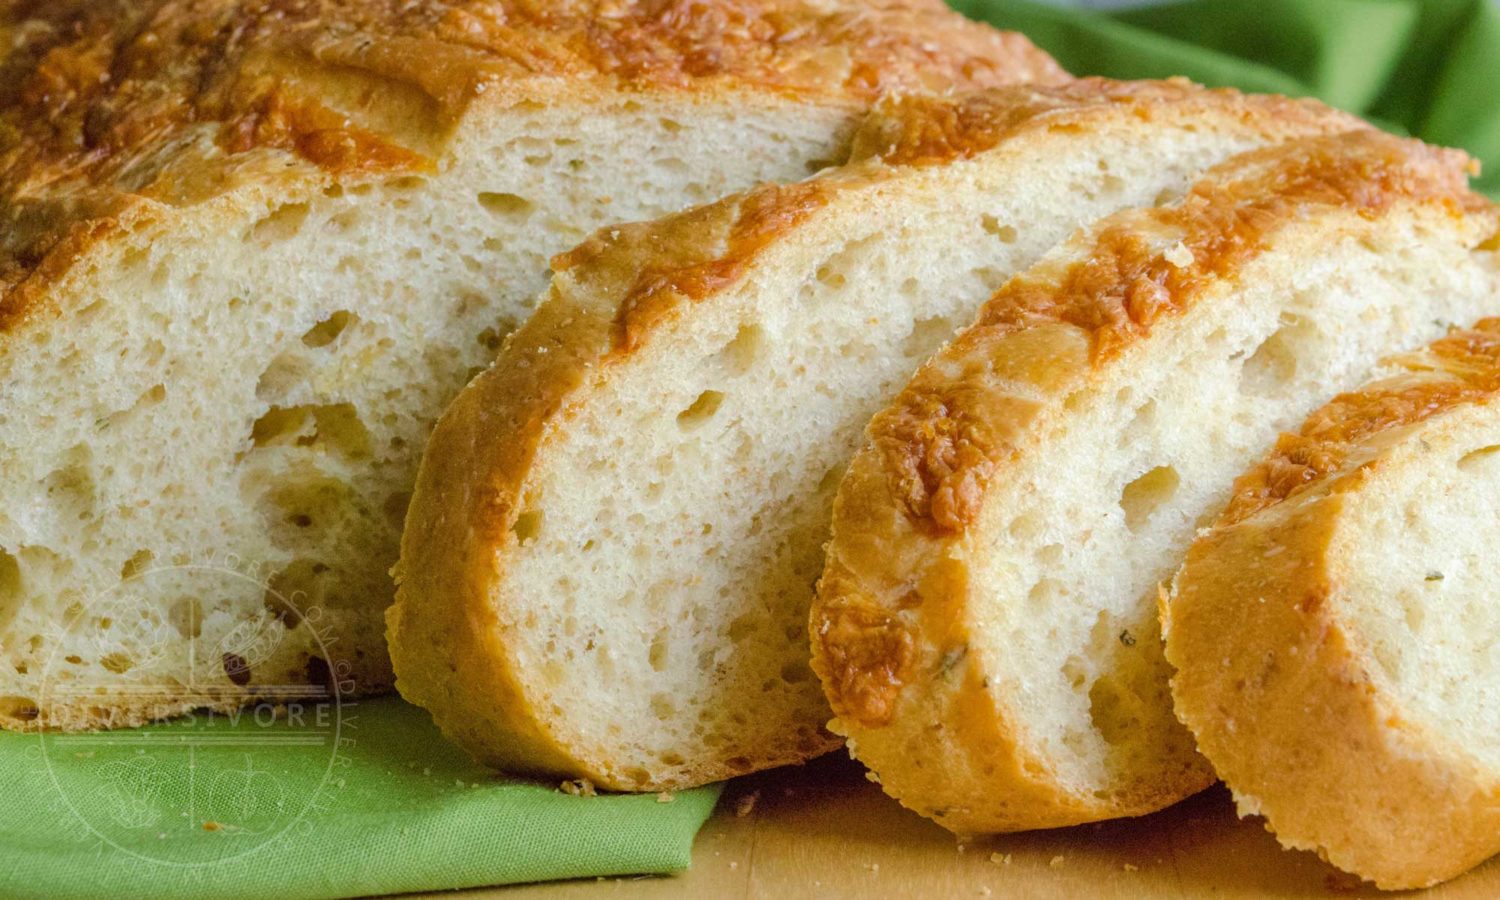 Rosemary Cheddar Bread, sliced